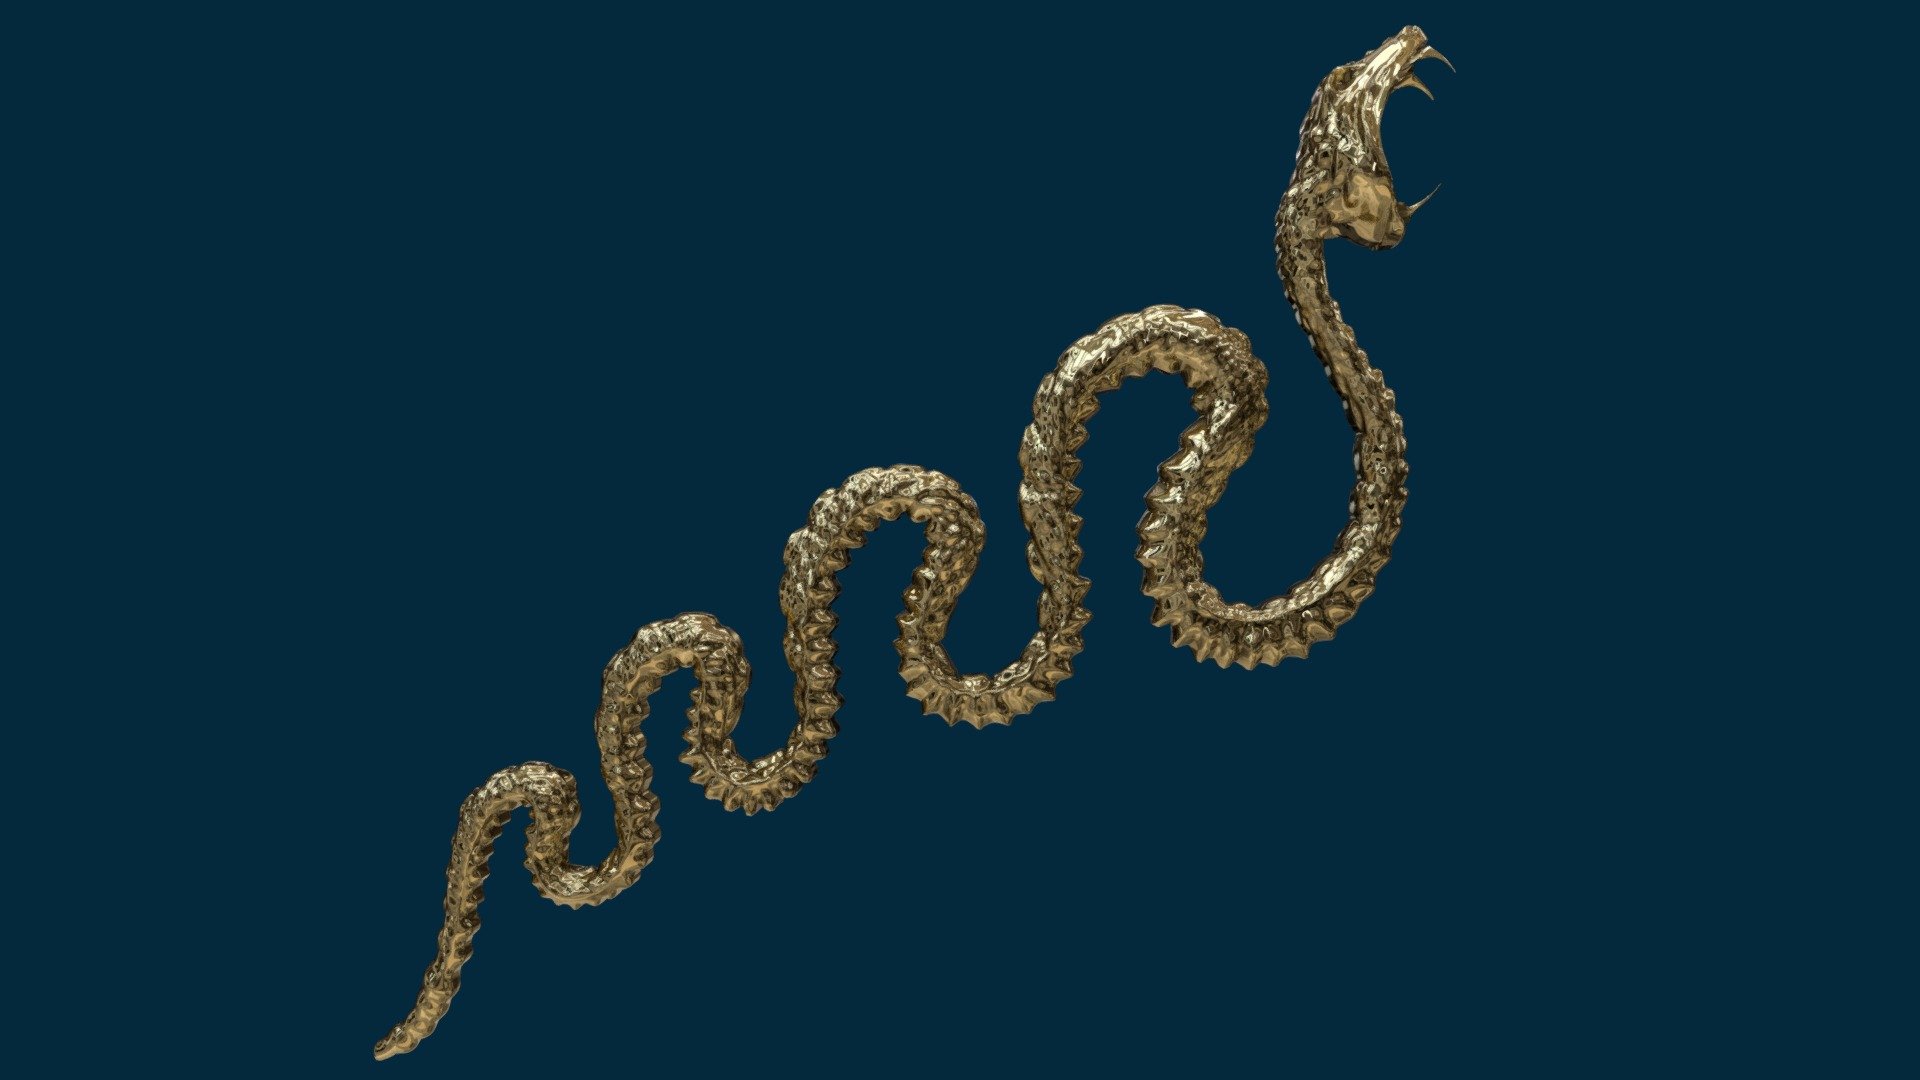 Golden snake sculpted in blender to make a tiara 3d model